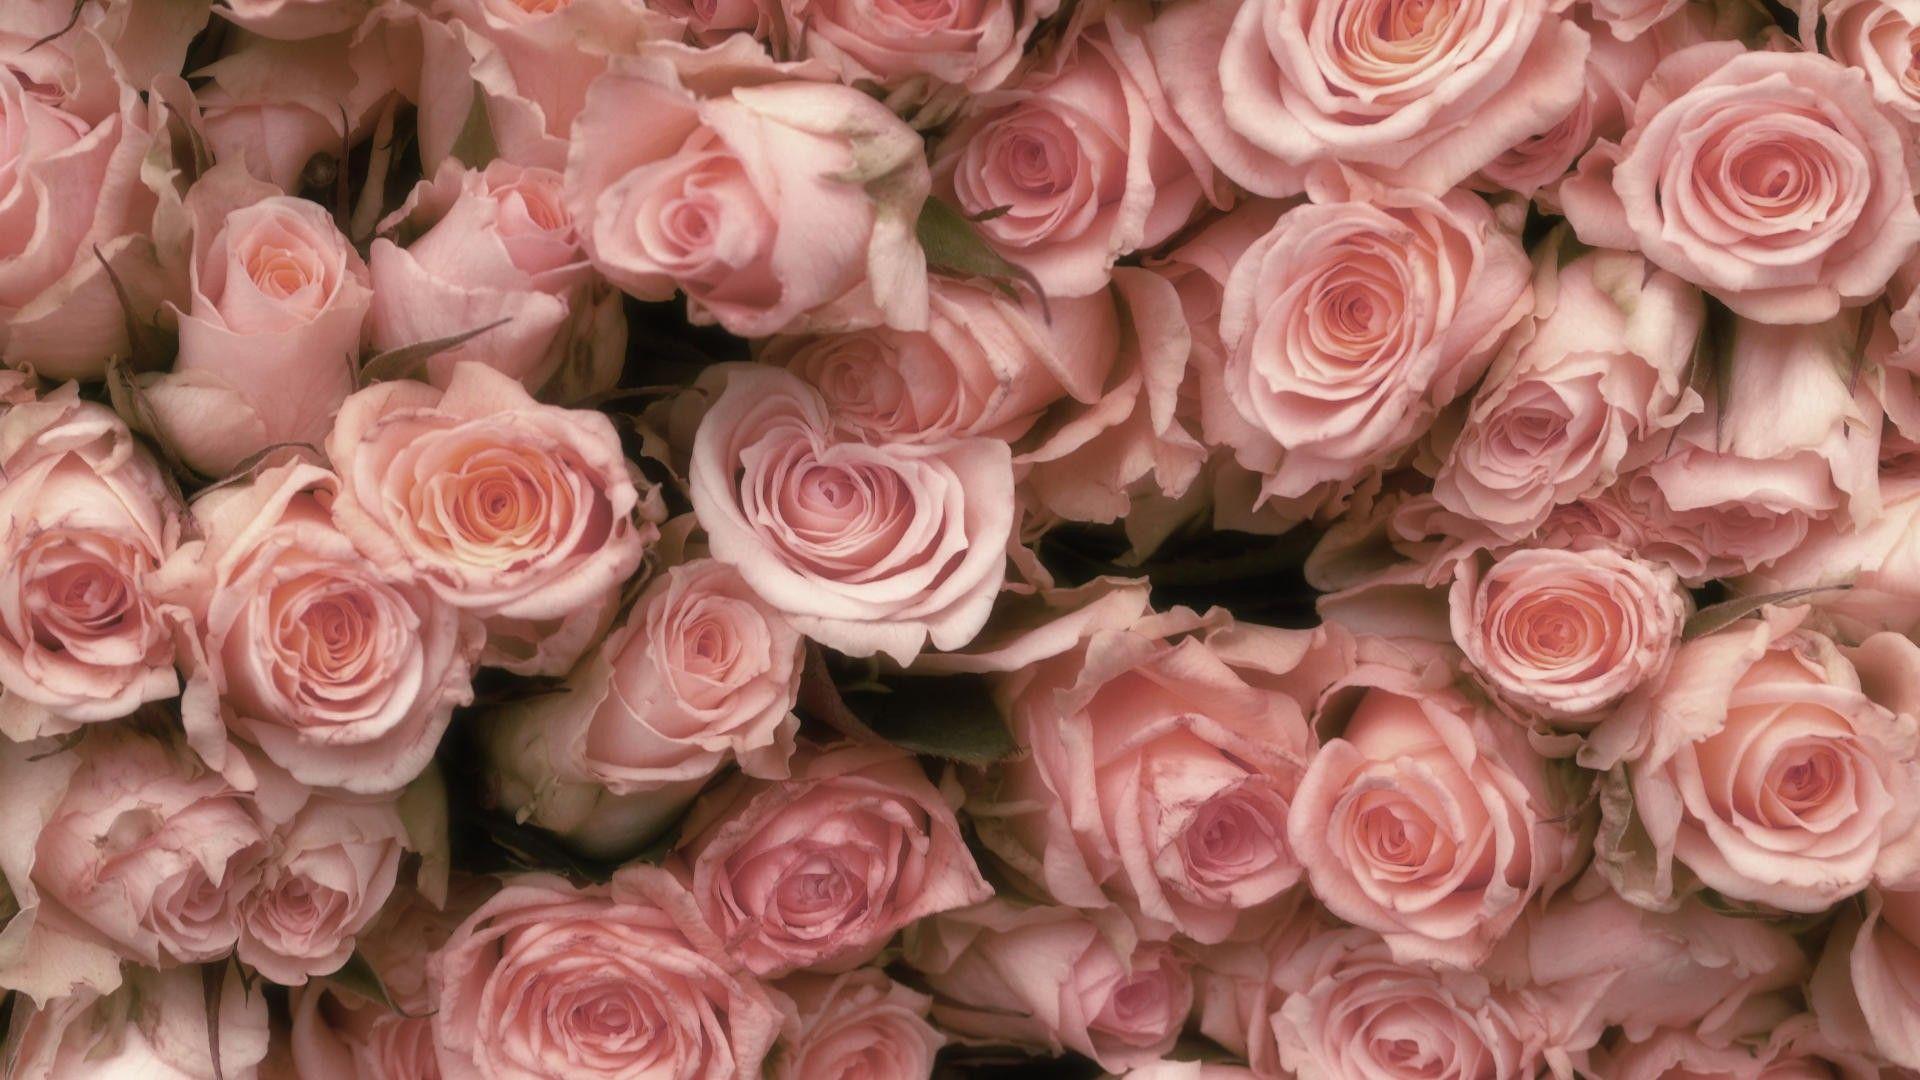 1920x1080 Pink Roses Hình nền J57C9 1920x1080 px